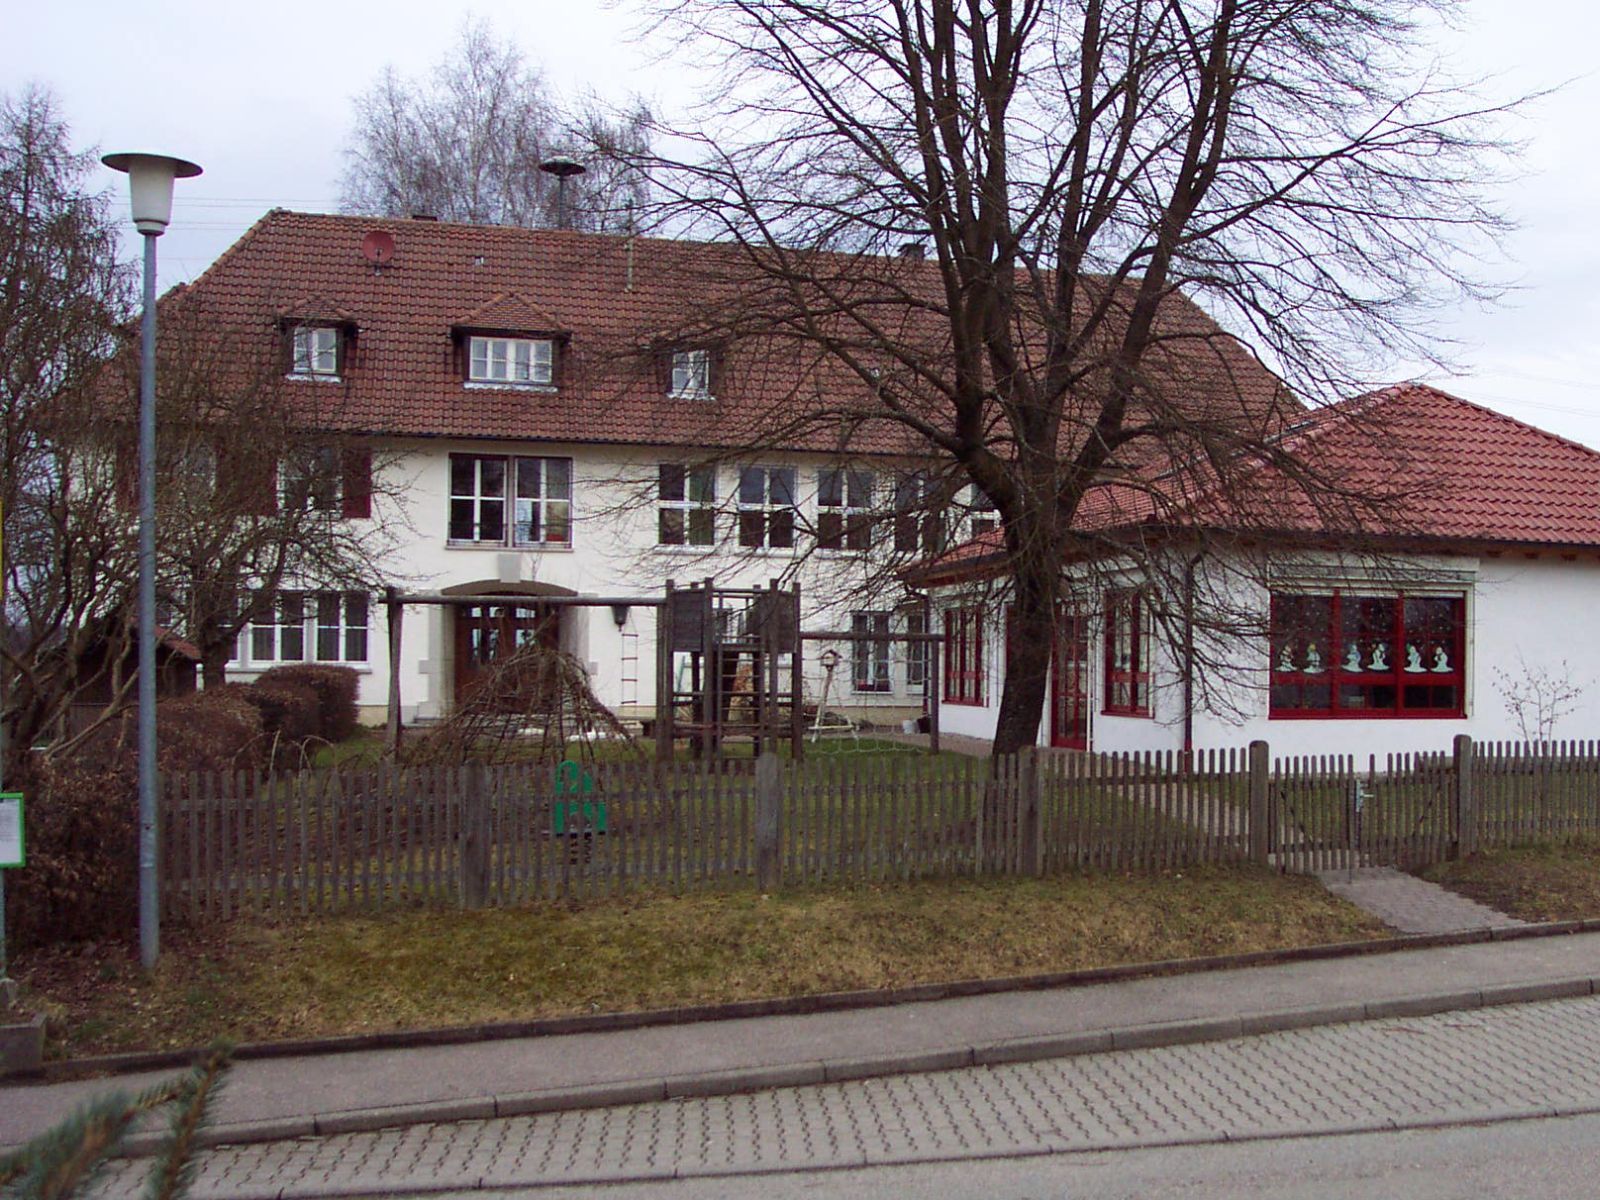  Dorfgemeinschaftshaus Bubenorbis 